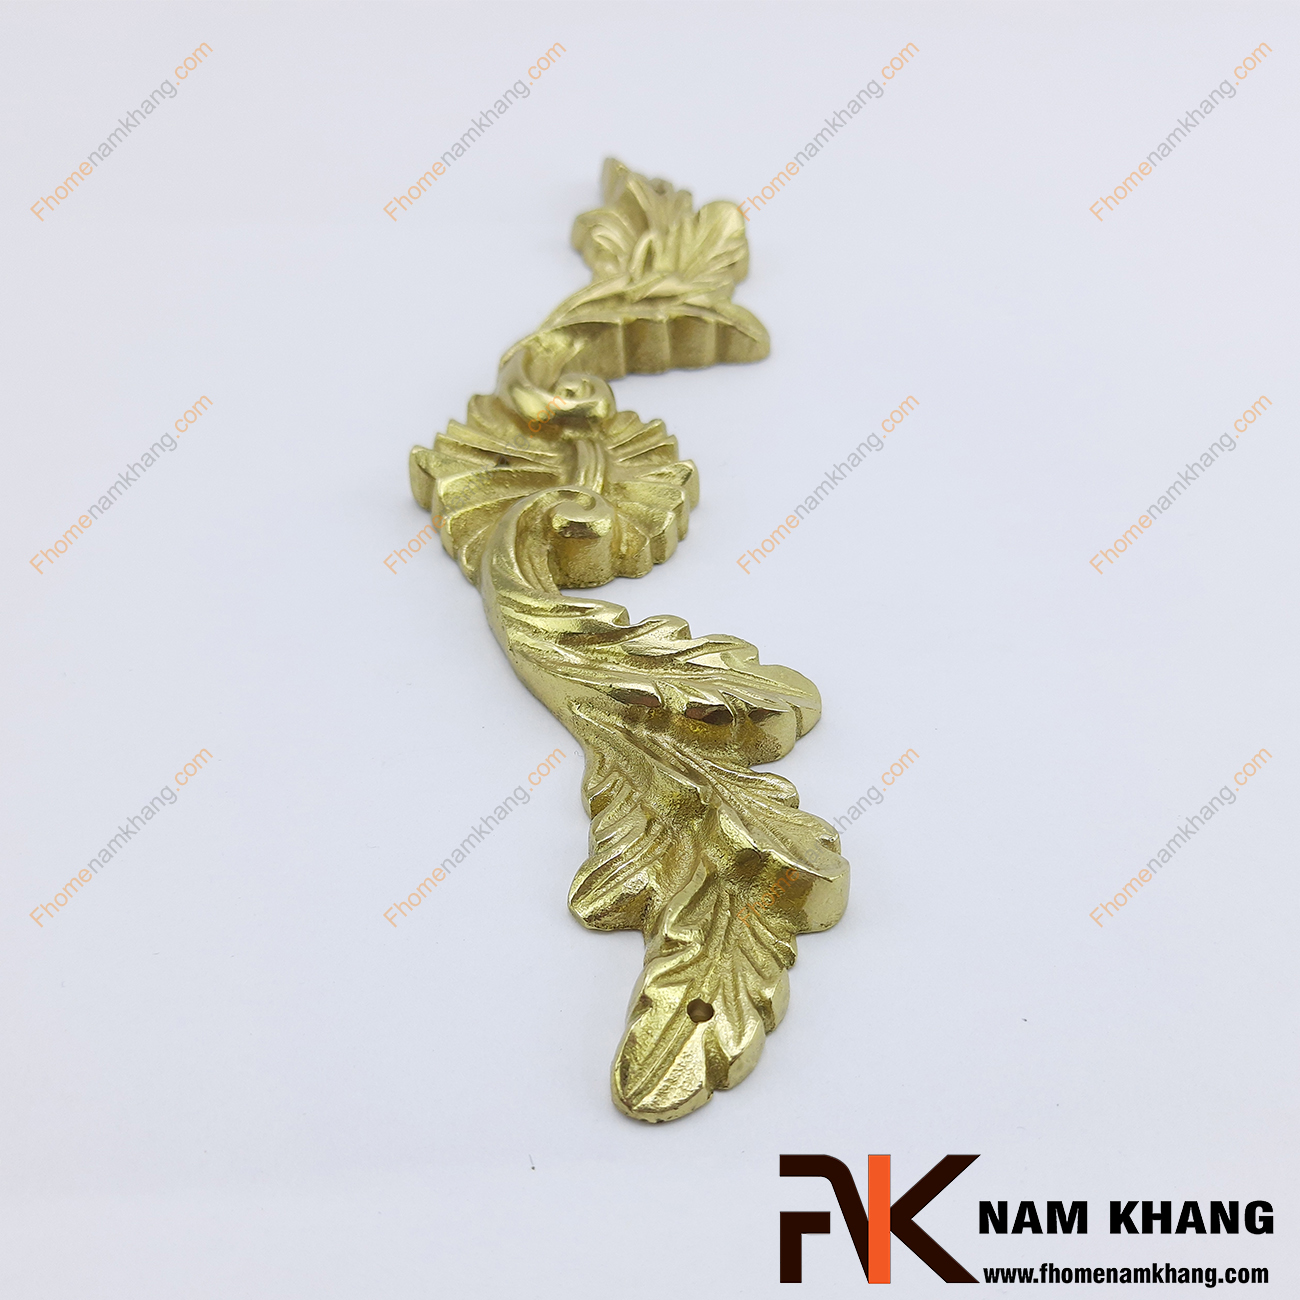 Ốp hoa văn trang trí màu đồng vàng bằng đồng cao cấp NKD085-200 được sản xuất từ đồng cao cấp mang độ bền rất cao và được gia công hiện đại cho những đường nét hoa văn rất thực tế.